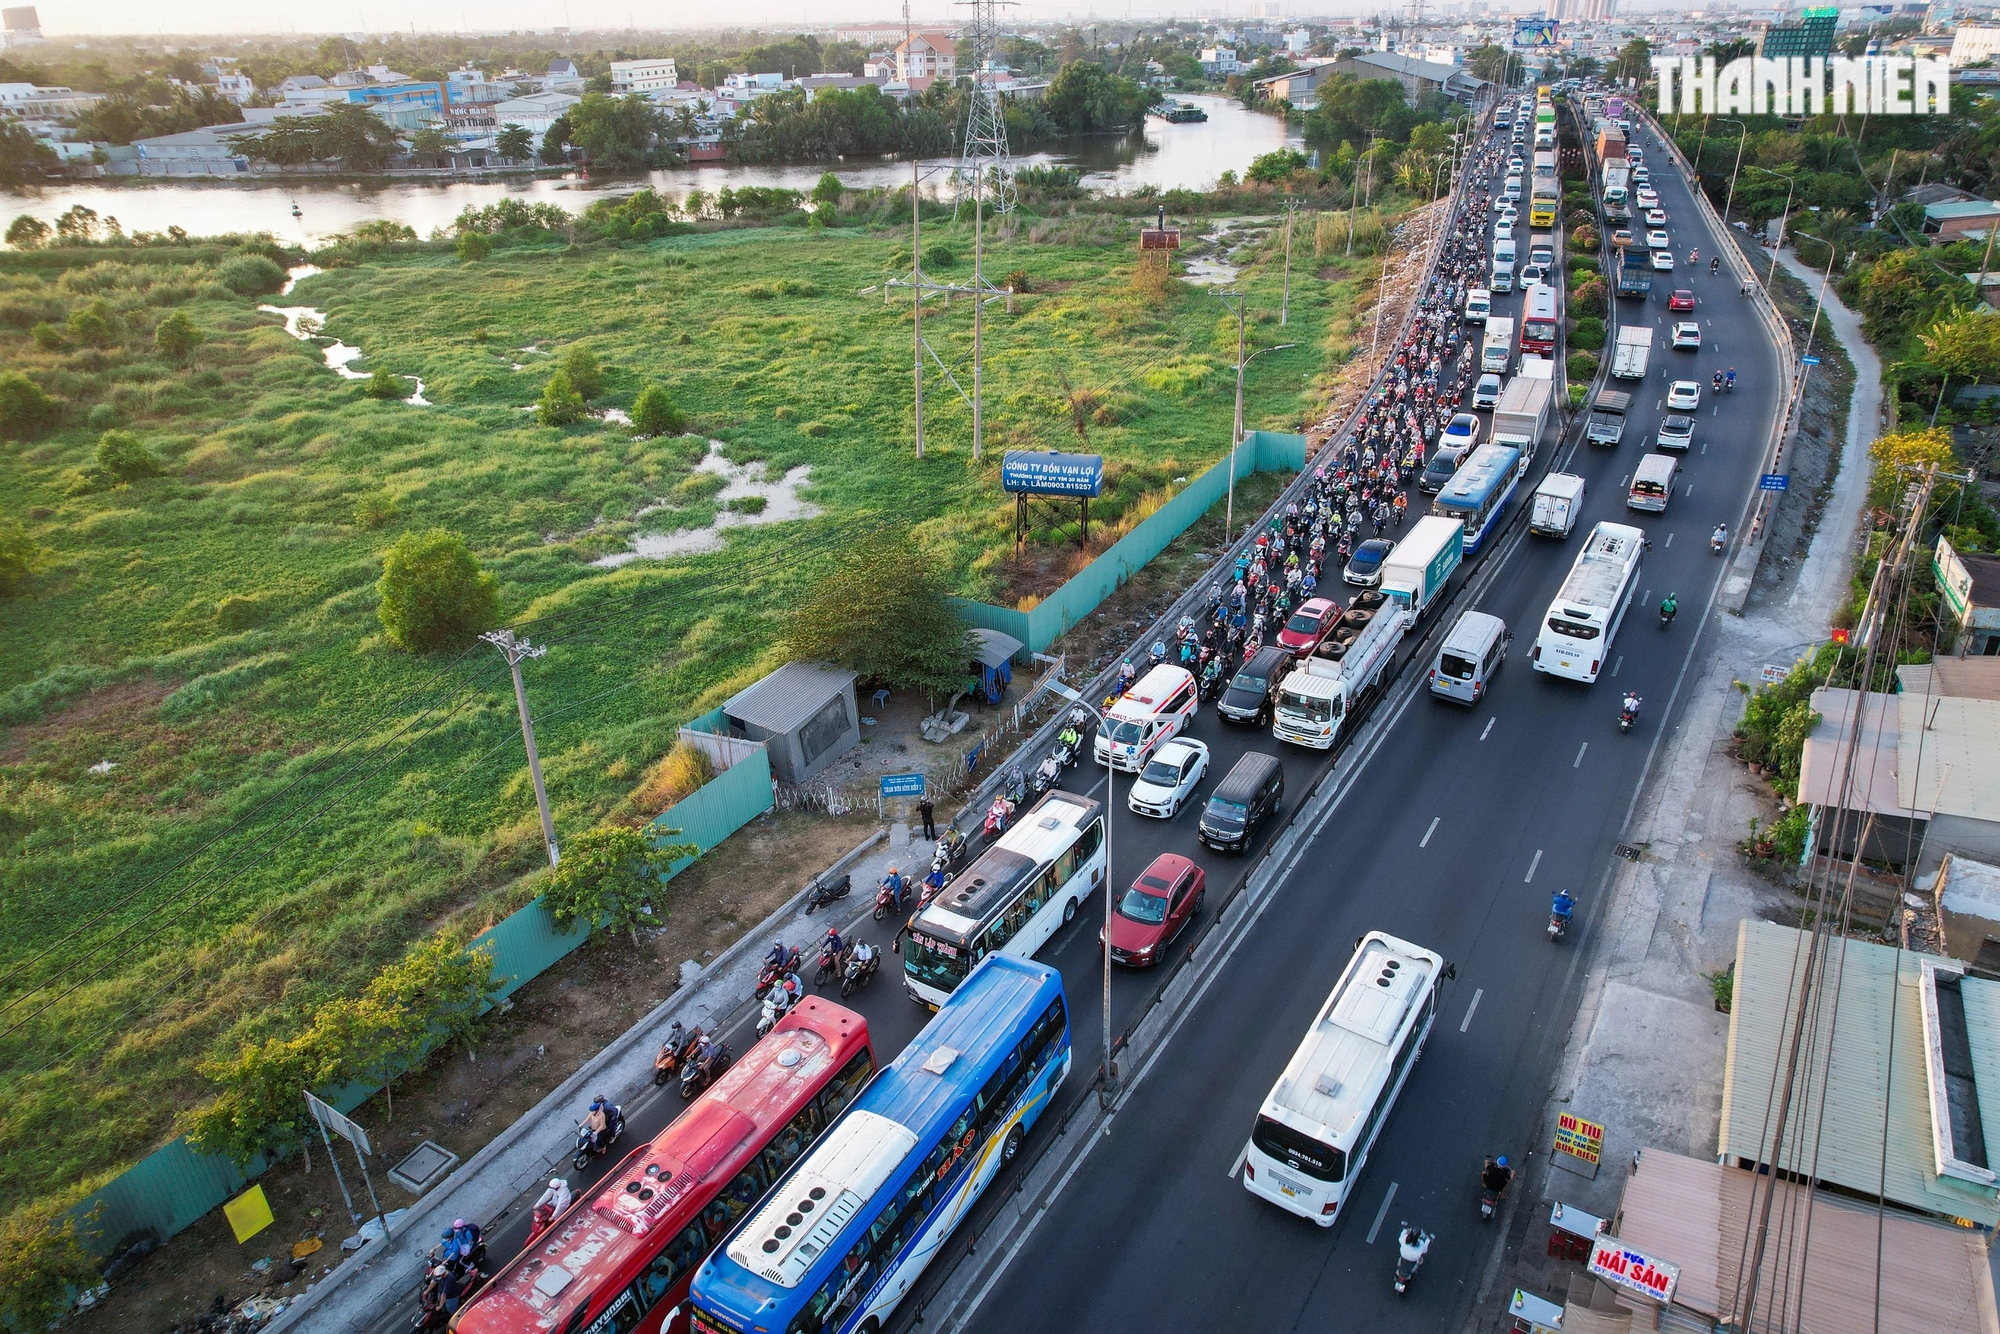 Khoảng 17 giờ, tại một số nút giao thông trọng điểm như cầu cầu Bình Điền, giao lộ Quốc lộ 1 - Nguyễn Hữu Trí đã xảy ra tình trạng ùn ứ, phương tiện di chuyển khó khăn